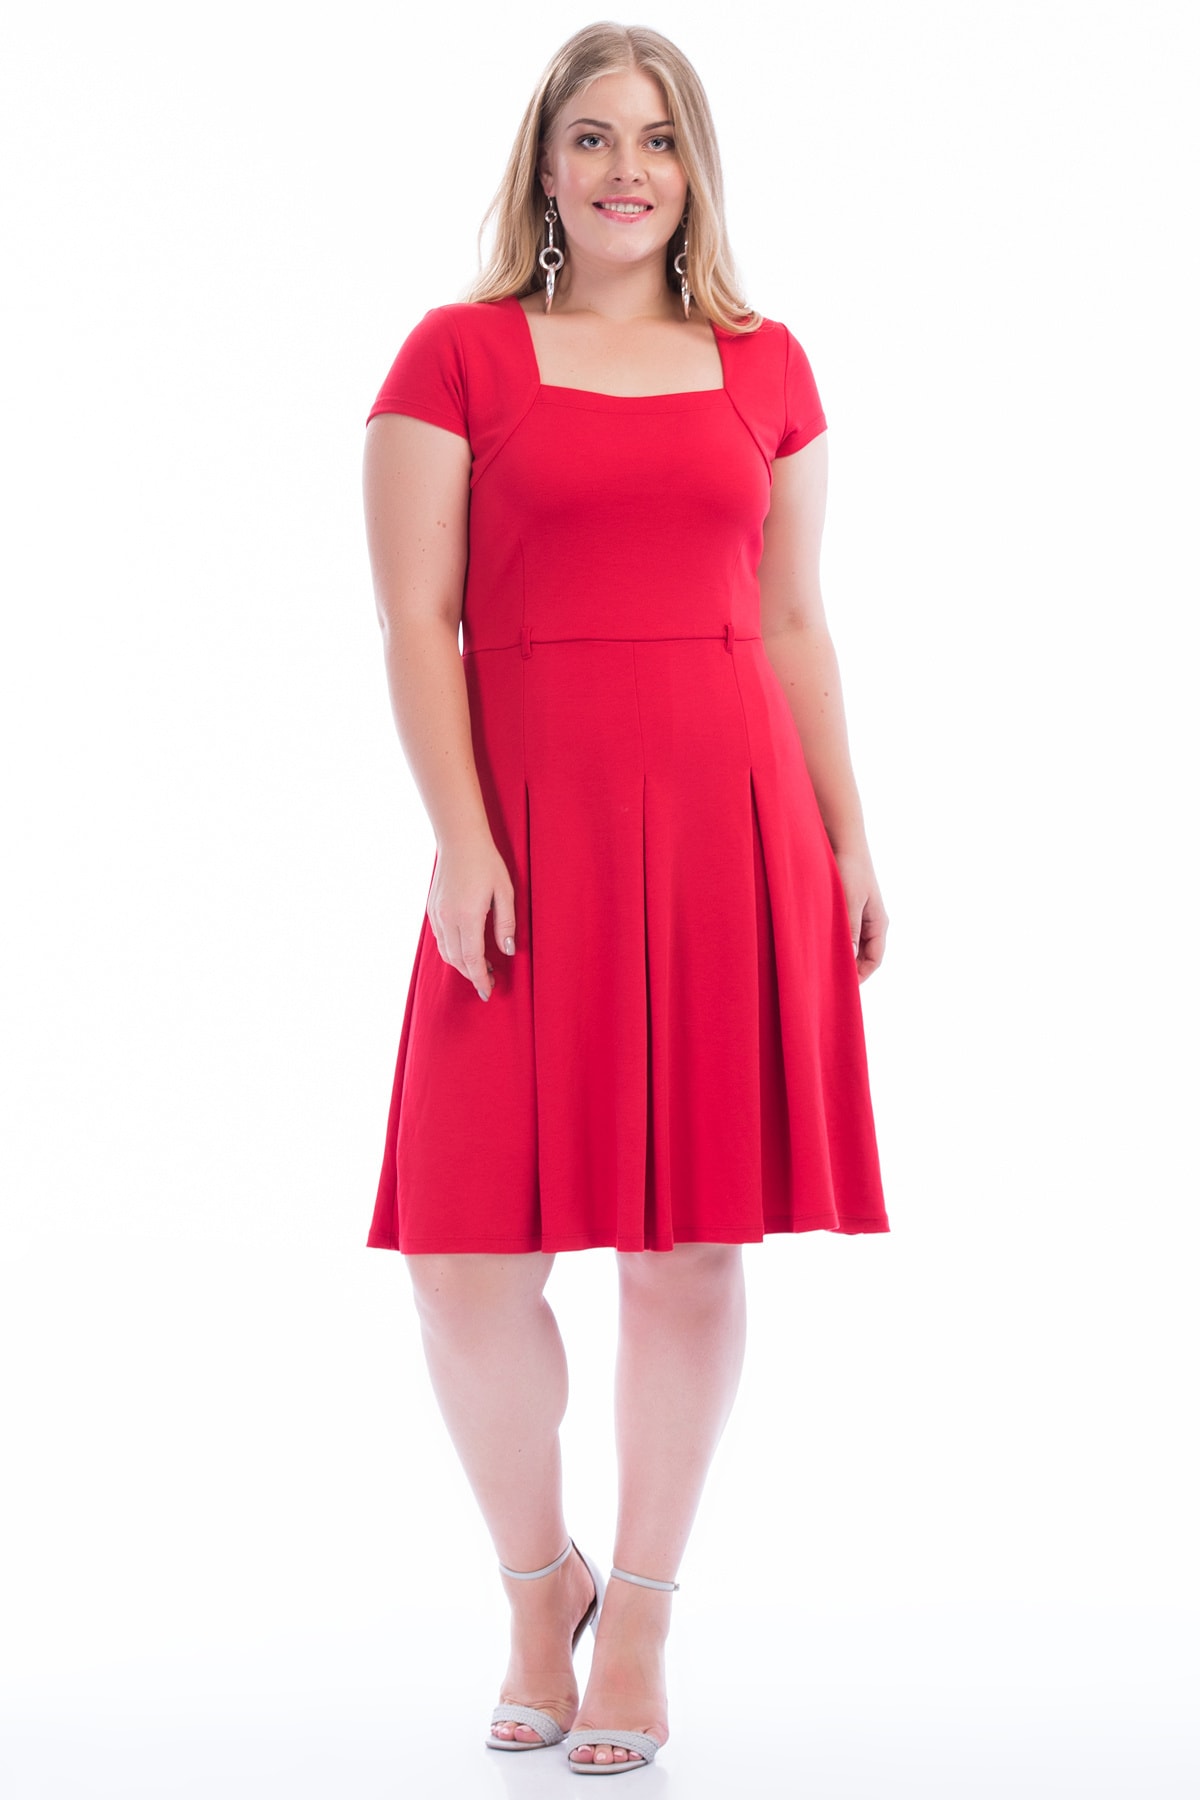 Şans Women's Plus Size Red Waist Pleated Dress